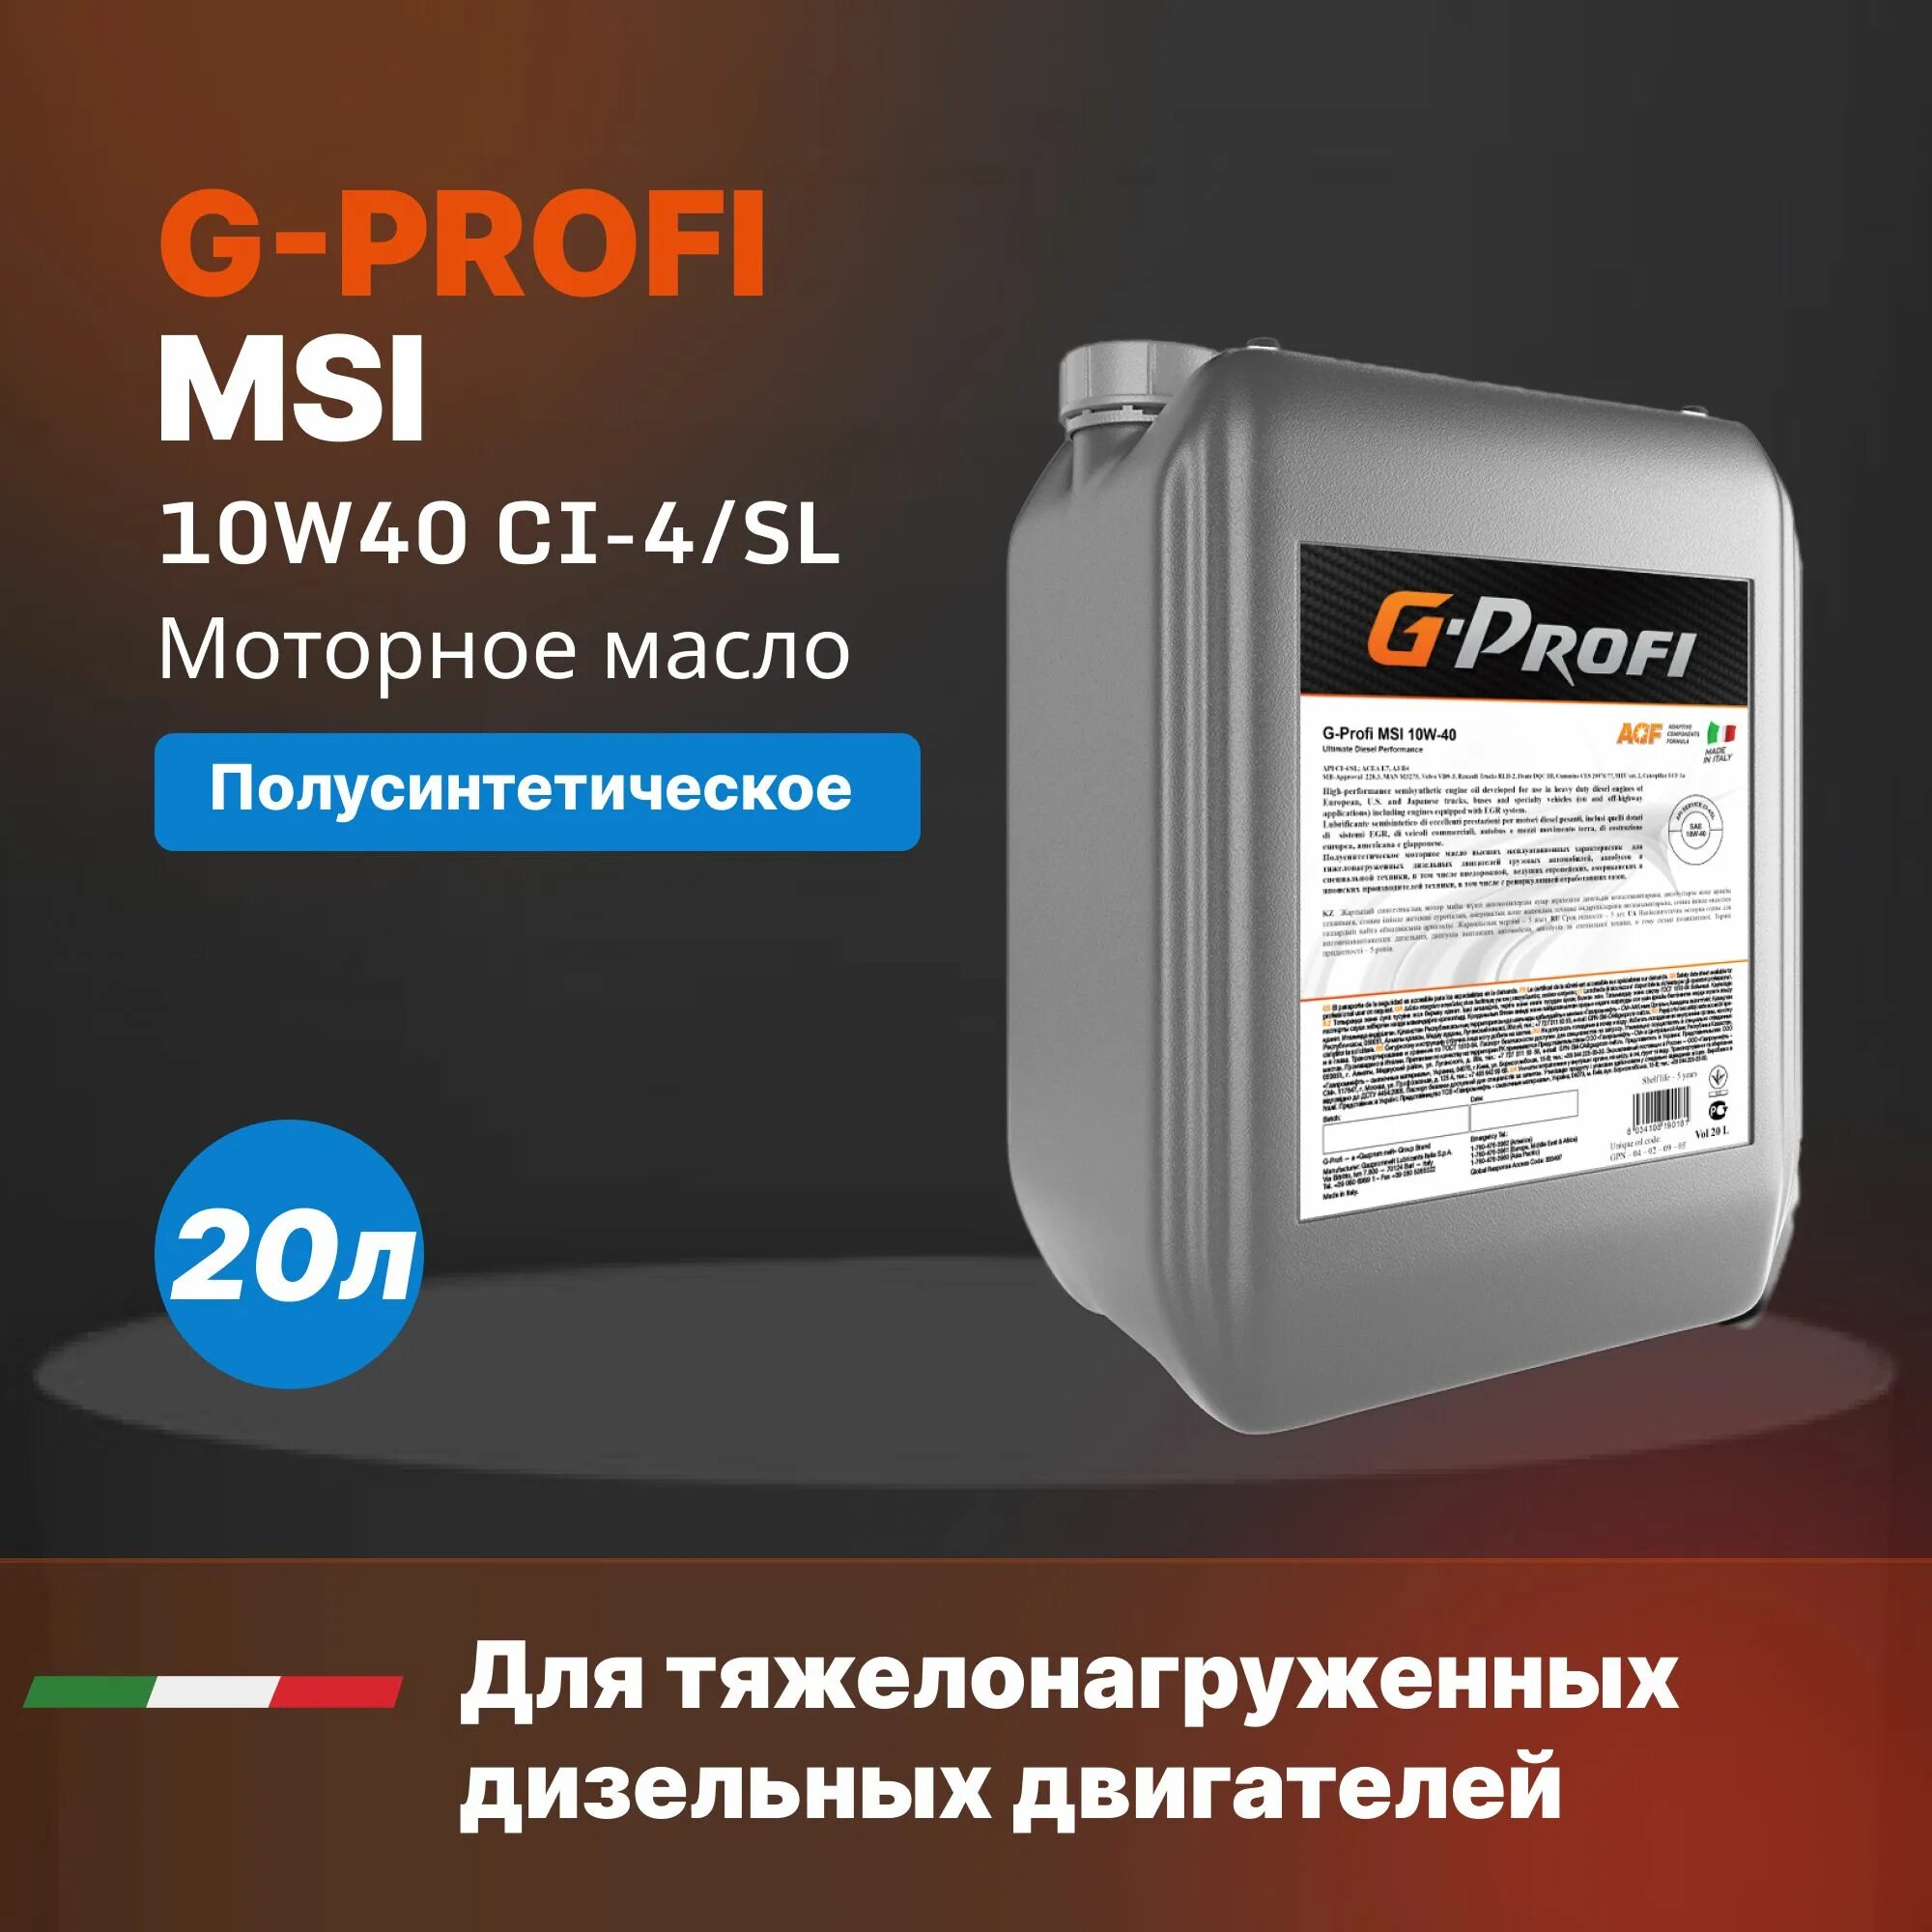 G Profi MSI 10w 40. G-Profi MSI 10w-40 205л. Масло g-Profi MSI 10w40 (205л/179 кг) весовой. G-Profi MSI 10w-40 20л. Масло msi 10w 40